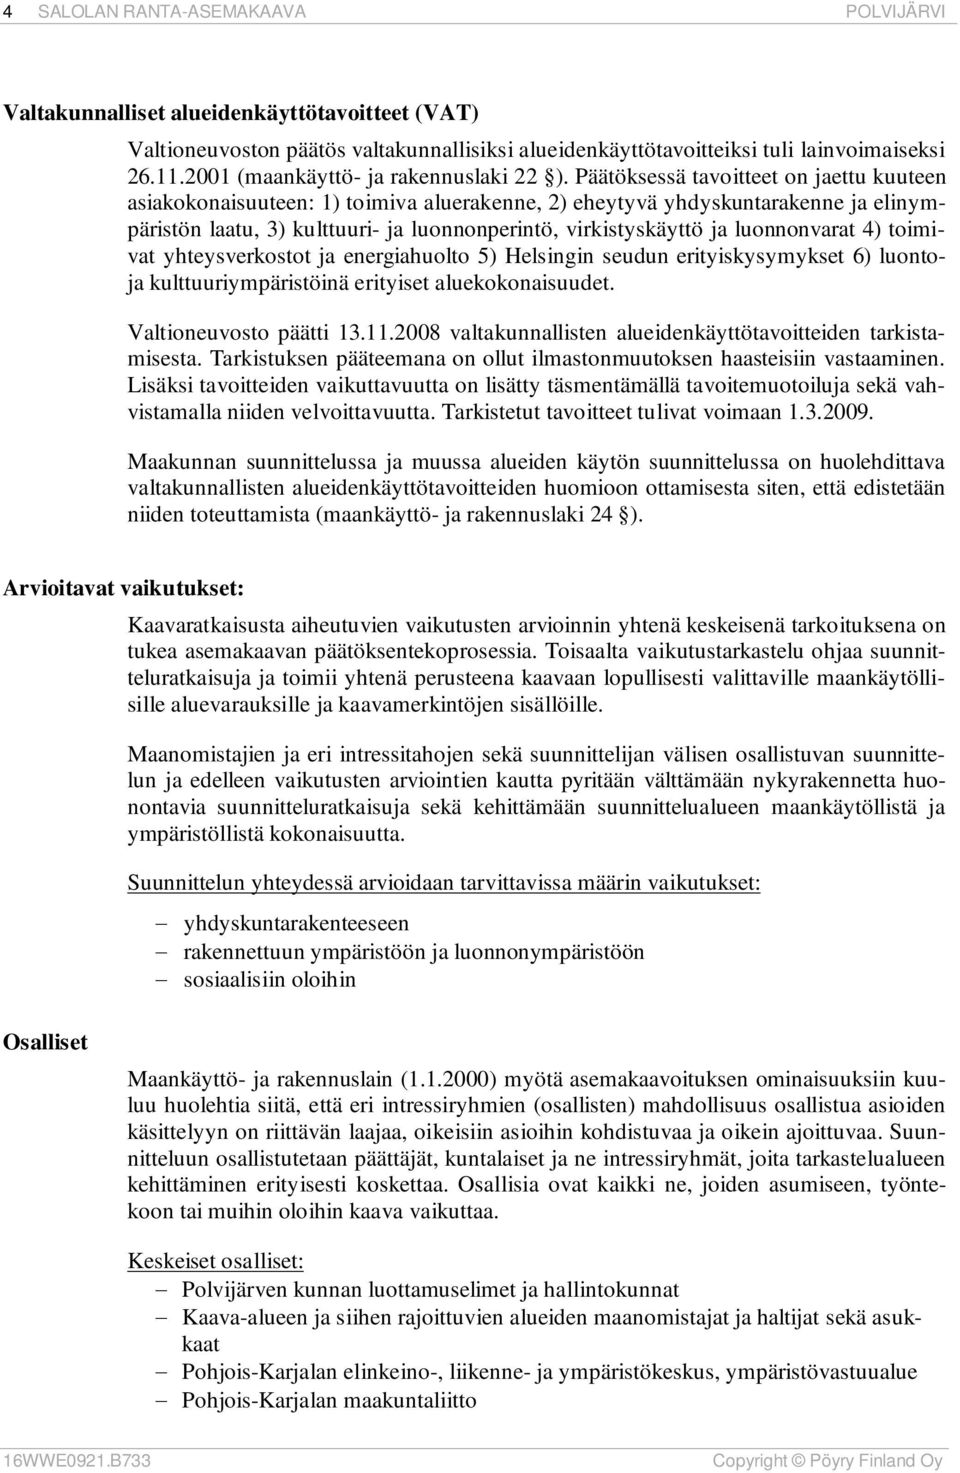 luonnonvarat 4) toimivat yhteysverkostot ja energiahuolto 5) Helsingin seudun erityiskysymykset 6) luontoja kulttuuriympäristöinä erityiset aluekokonaisuudet. Valtioneuvosto päätti 13.11.